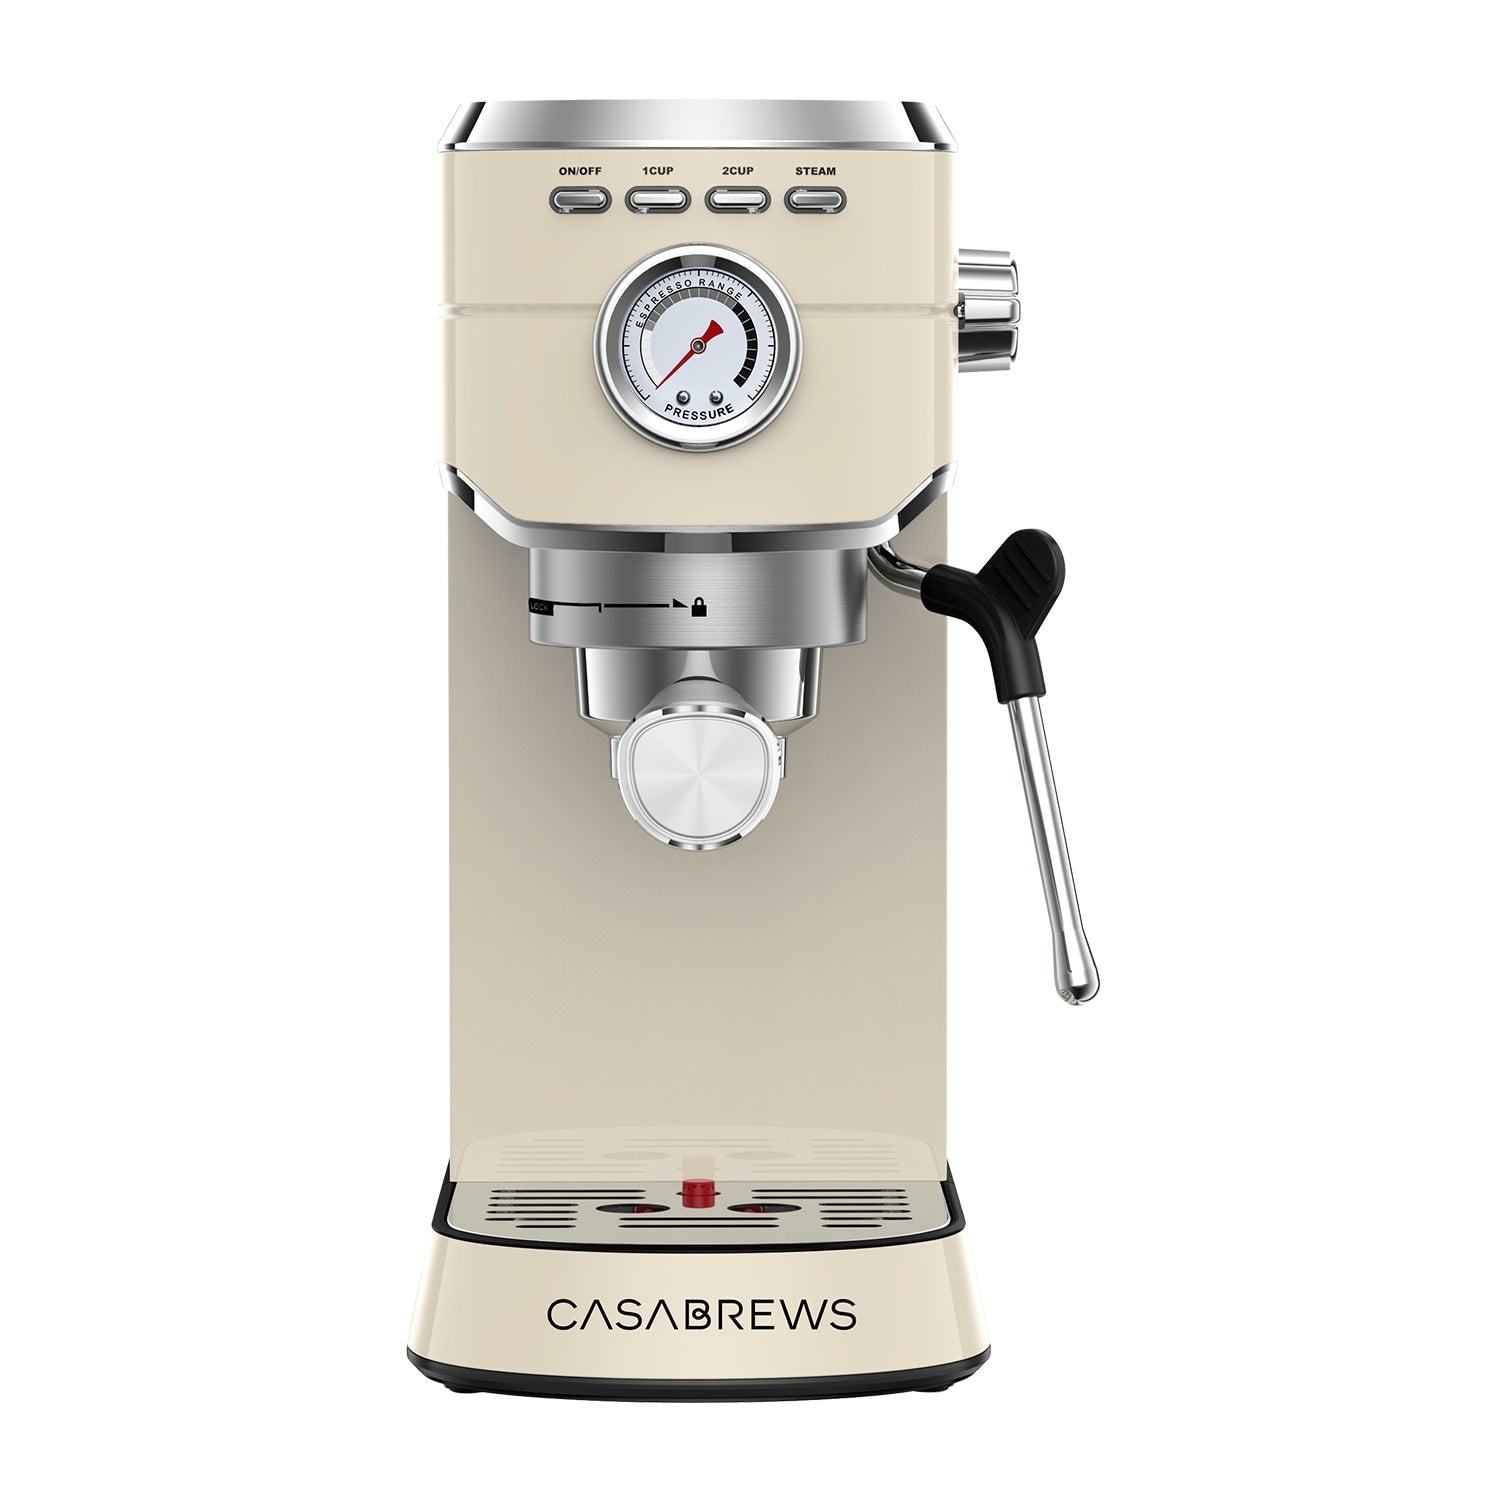 CASABREWS Compact 20 Bar Espresso Machine with 34o...